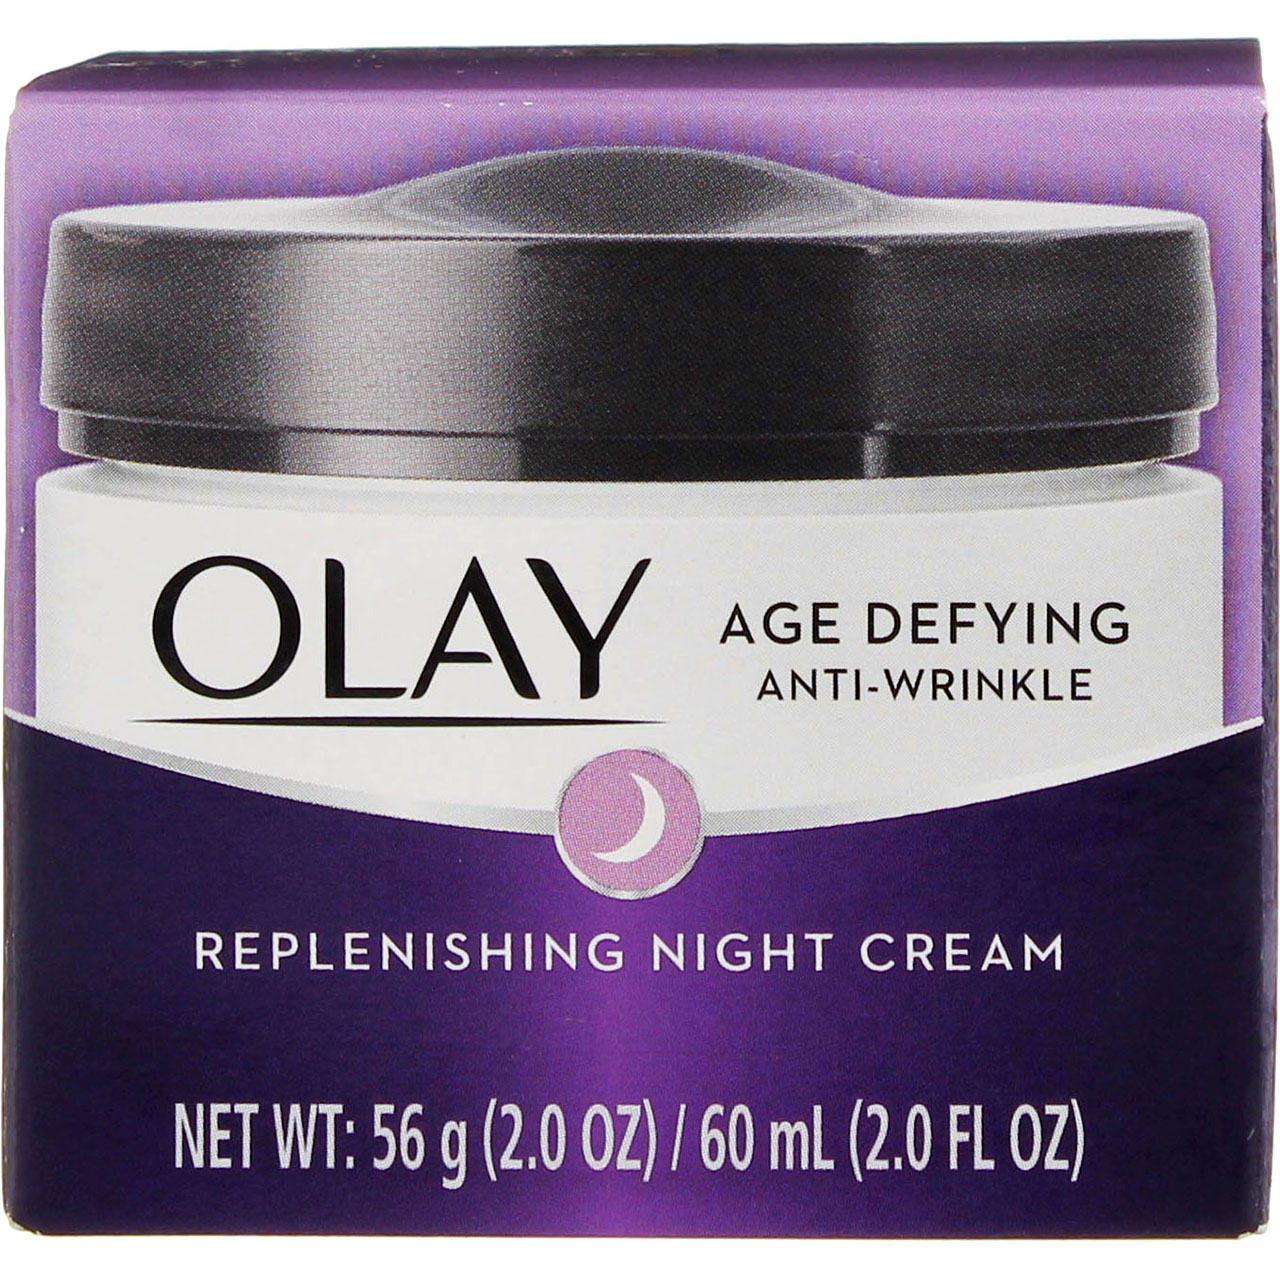 Olay Age Defying Anti-Wrinkle Replenishing Night Cream, 2 oz (Pack of 6) - image 1 of 5